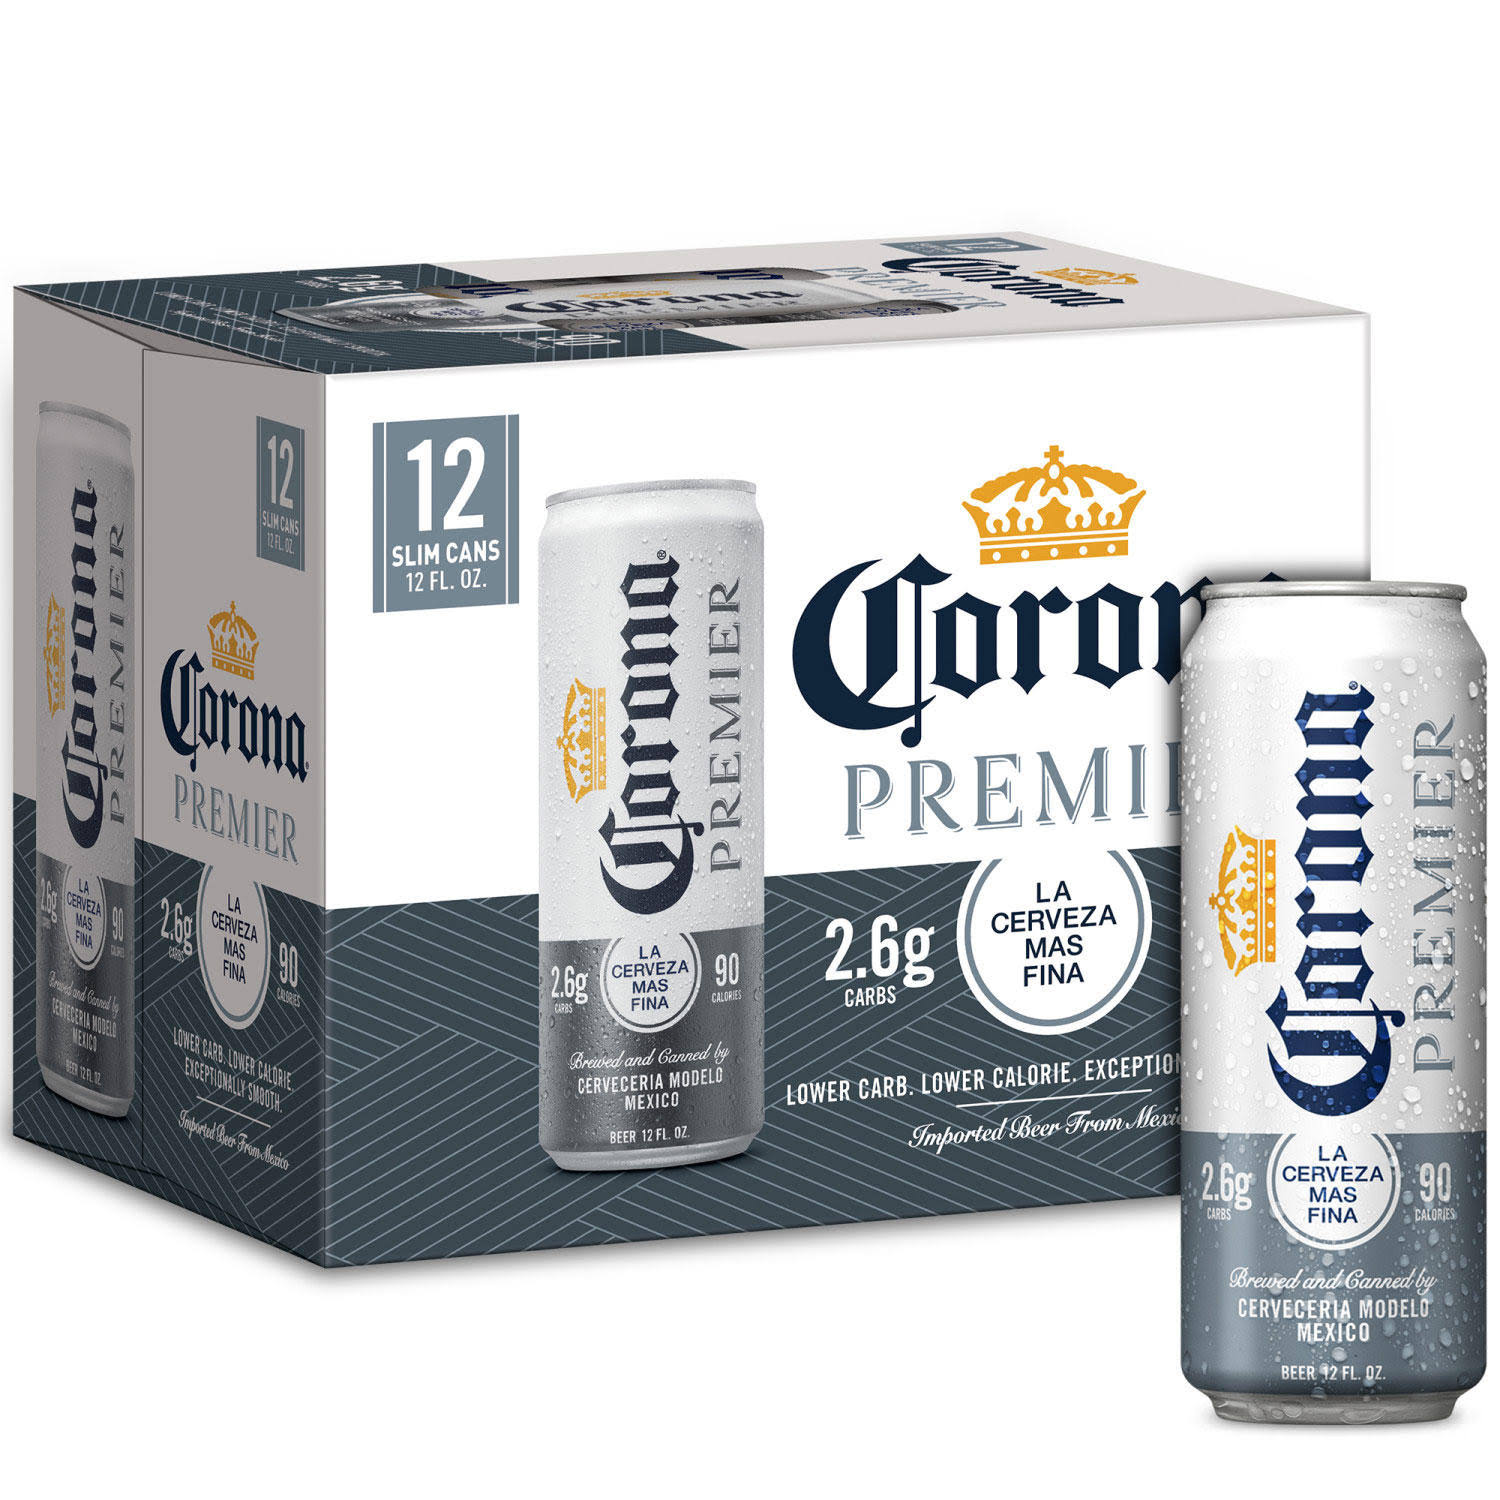 Corona Premier Beer - 12 pack, 12 fl oz slim cans